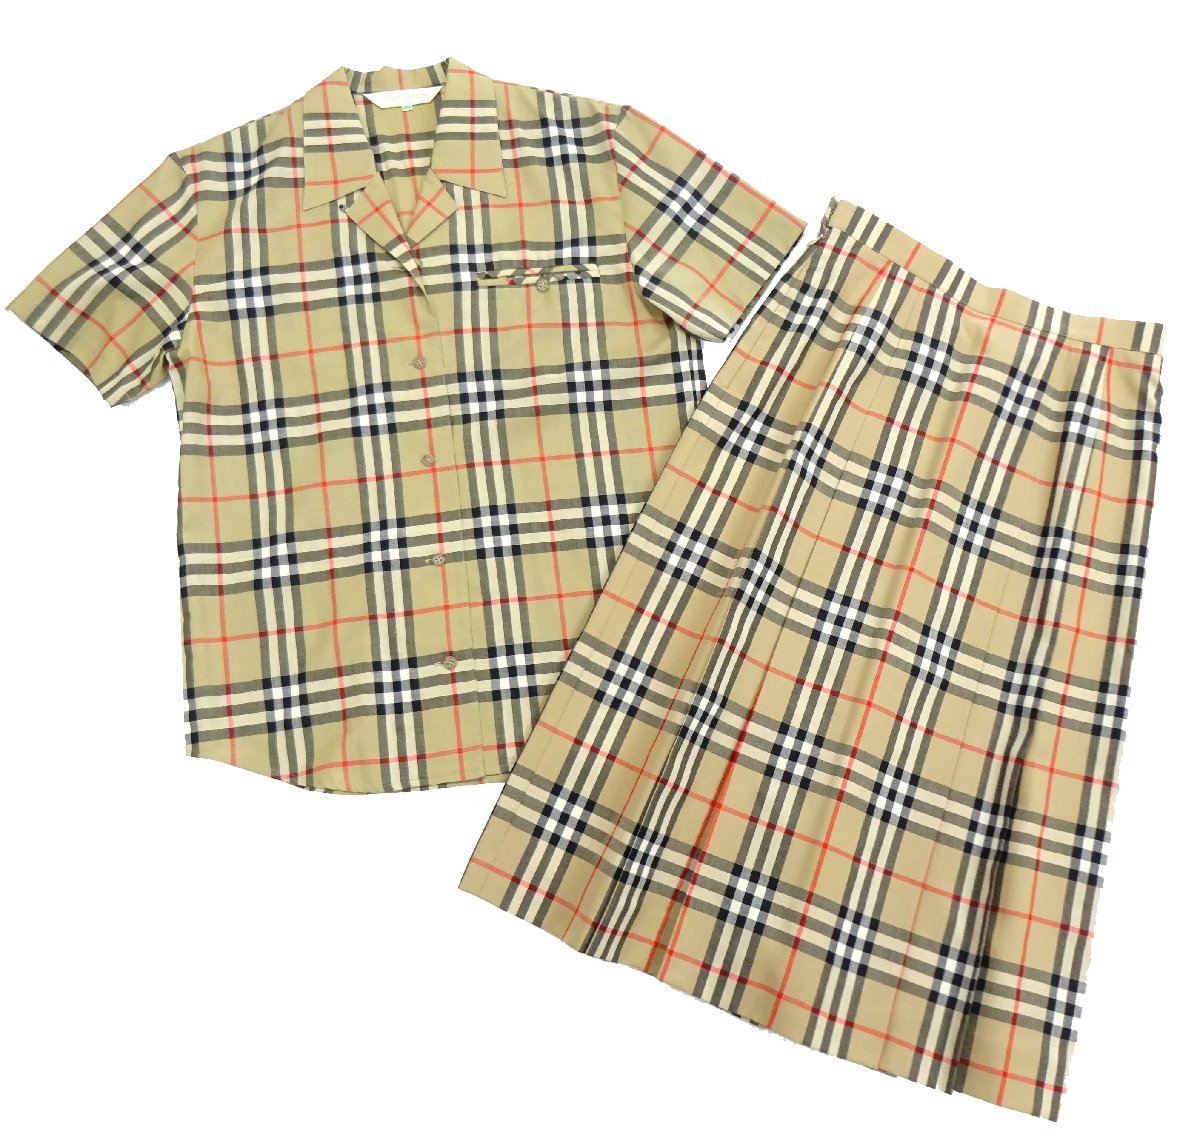  Burberry zBurberrysnoba проверка выставить рубашка / юбка tops европейская одежда женский оттенок бежевого общий рисунок [ Vintage ]